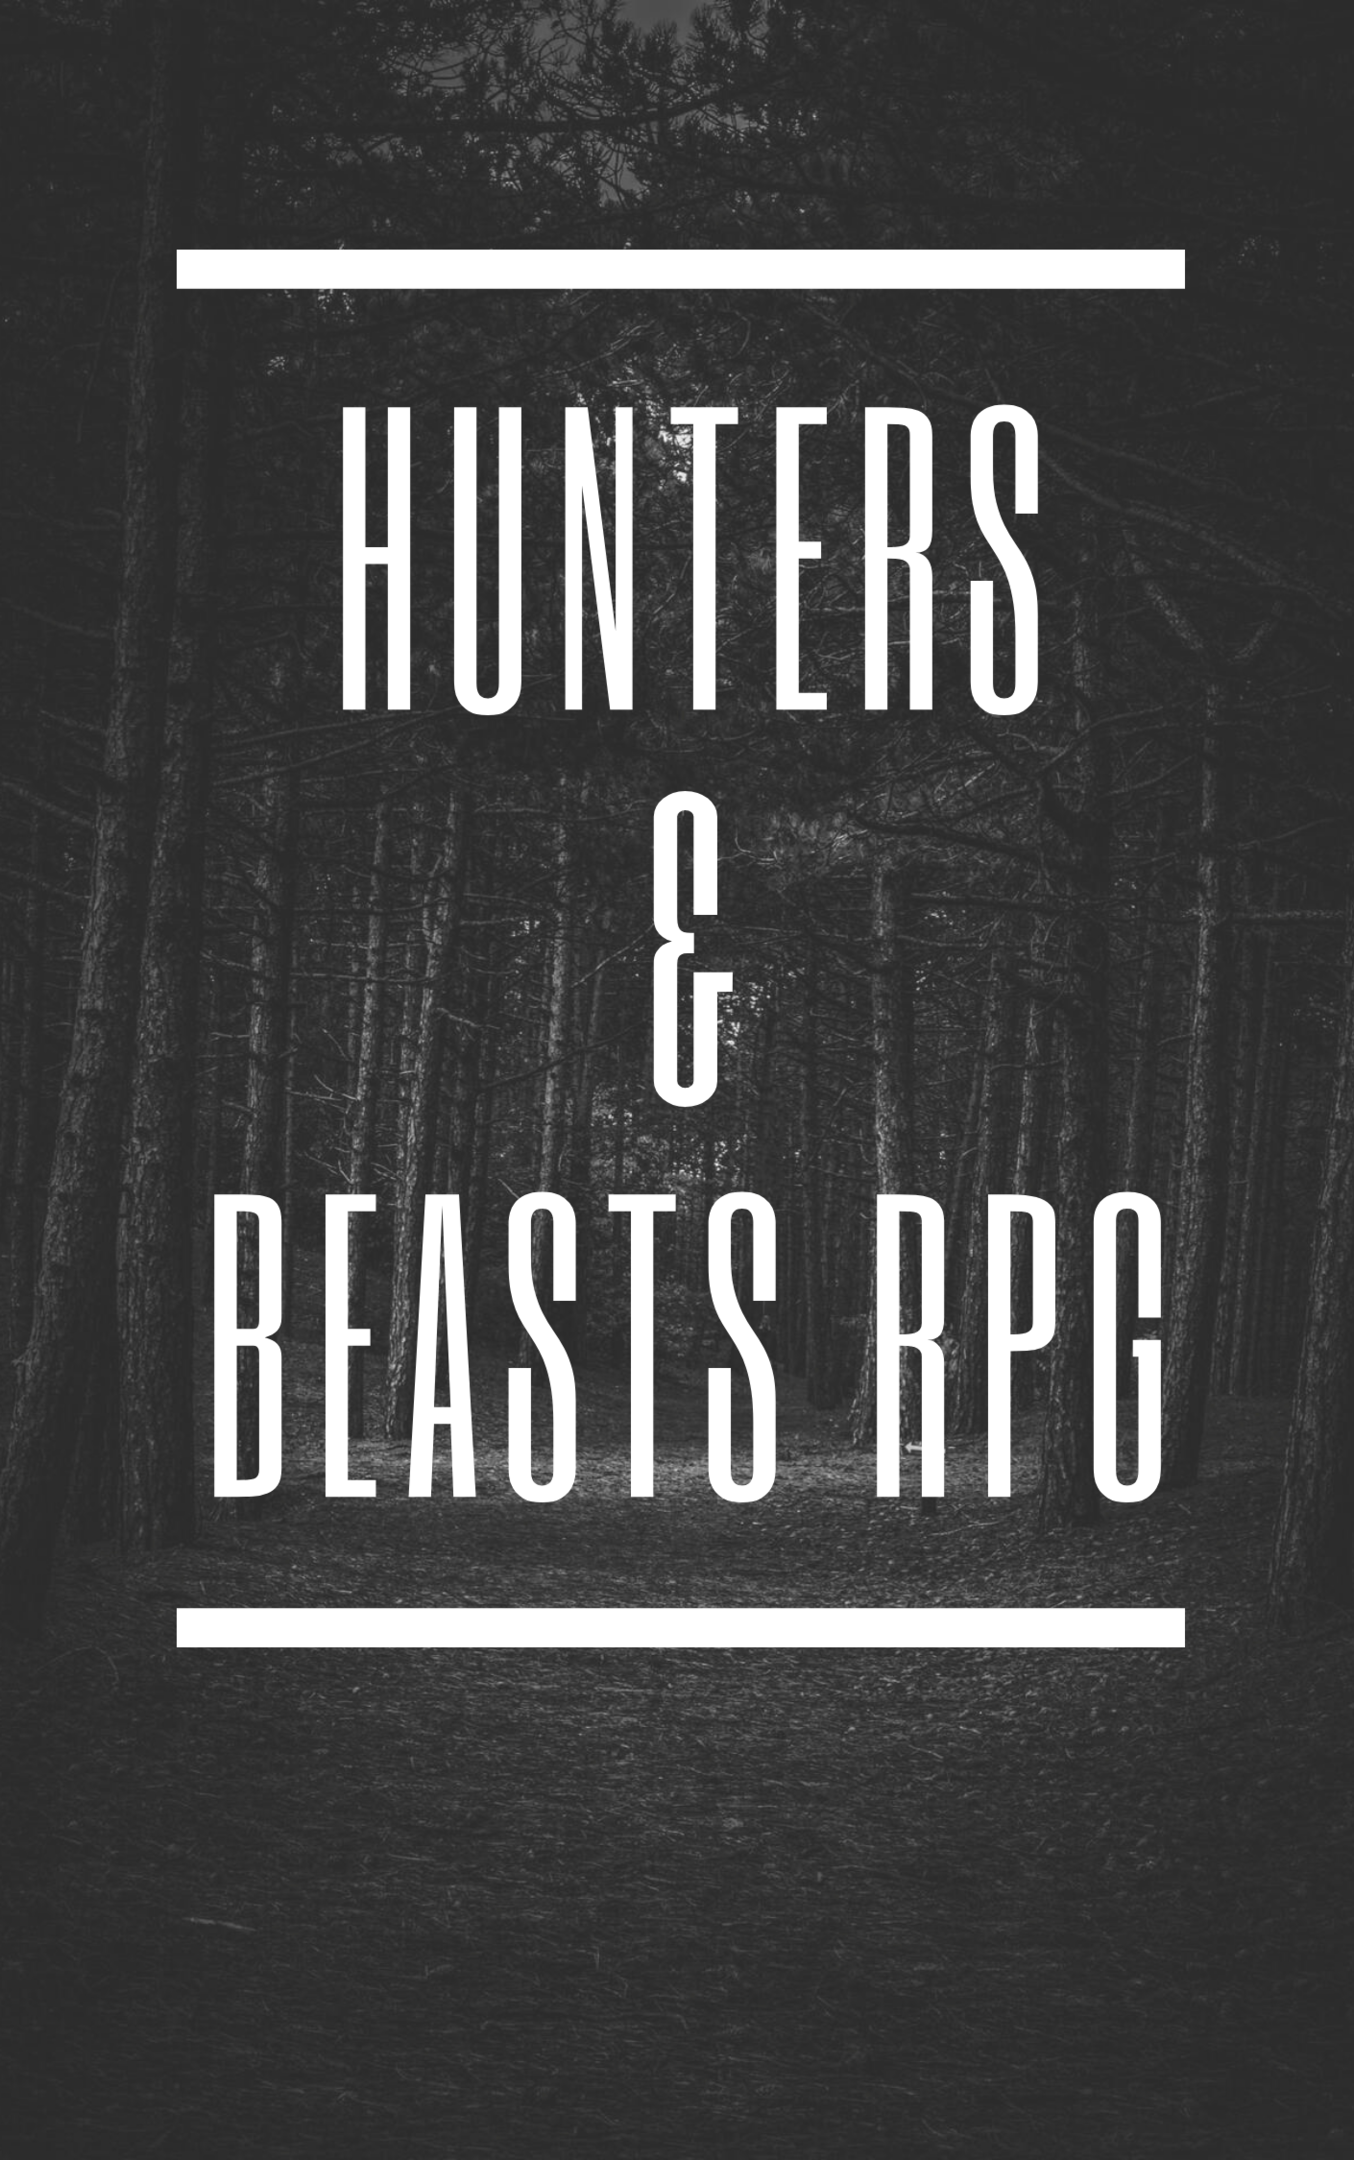 Hunters & Beasts RPG